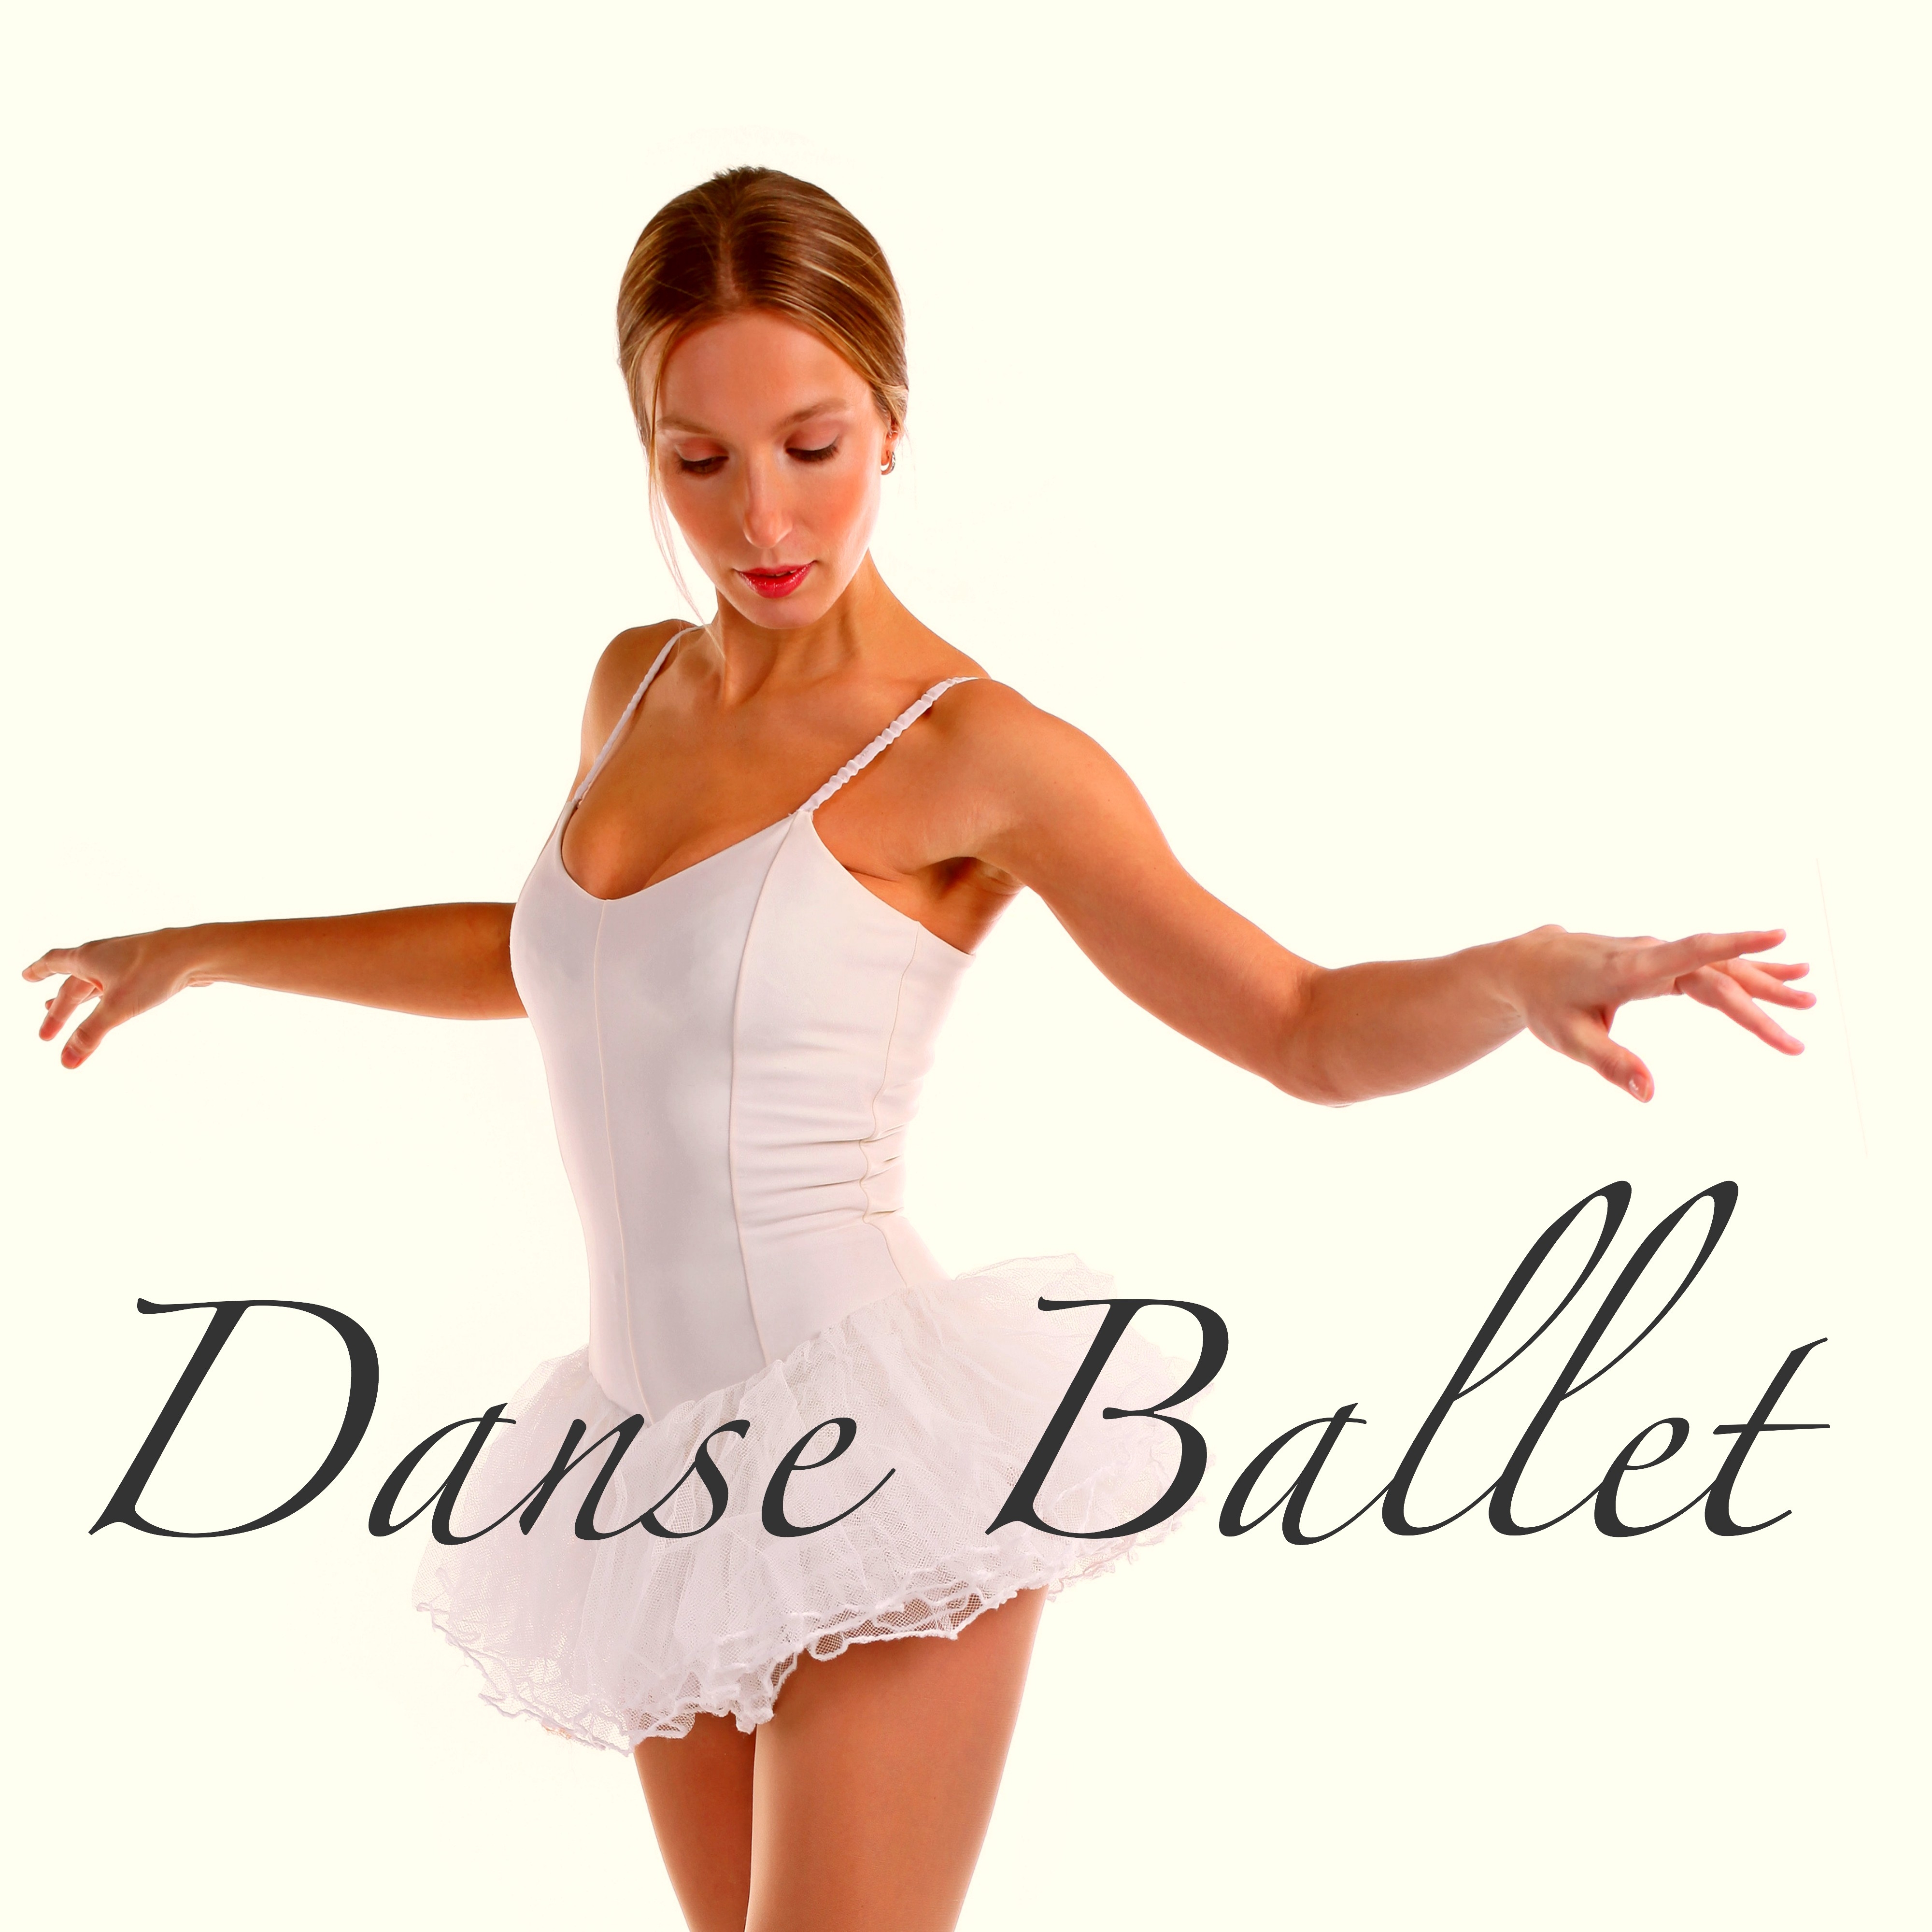 Danse Ballet  Acade mie de Ballet: Musique Classique de Piano Moderne pour Cours de Danse Classique